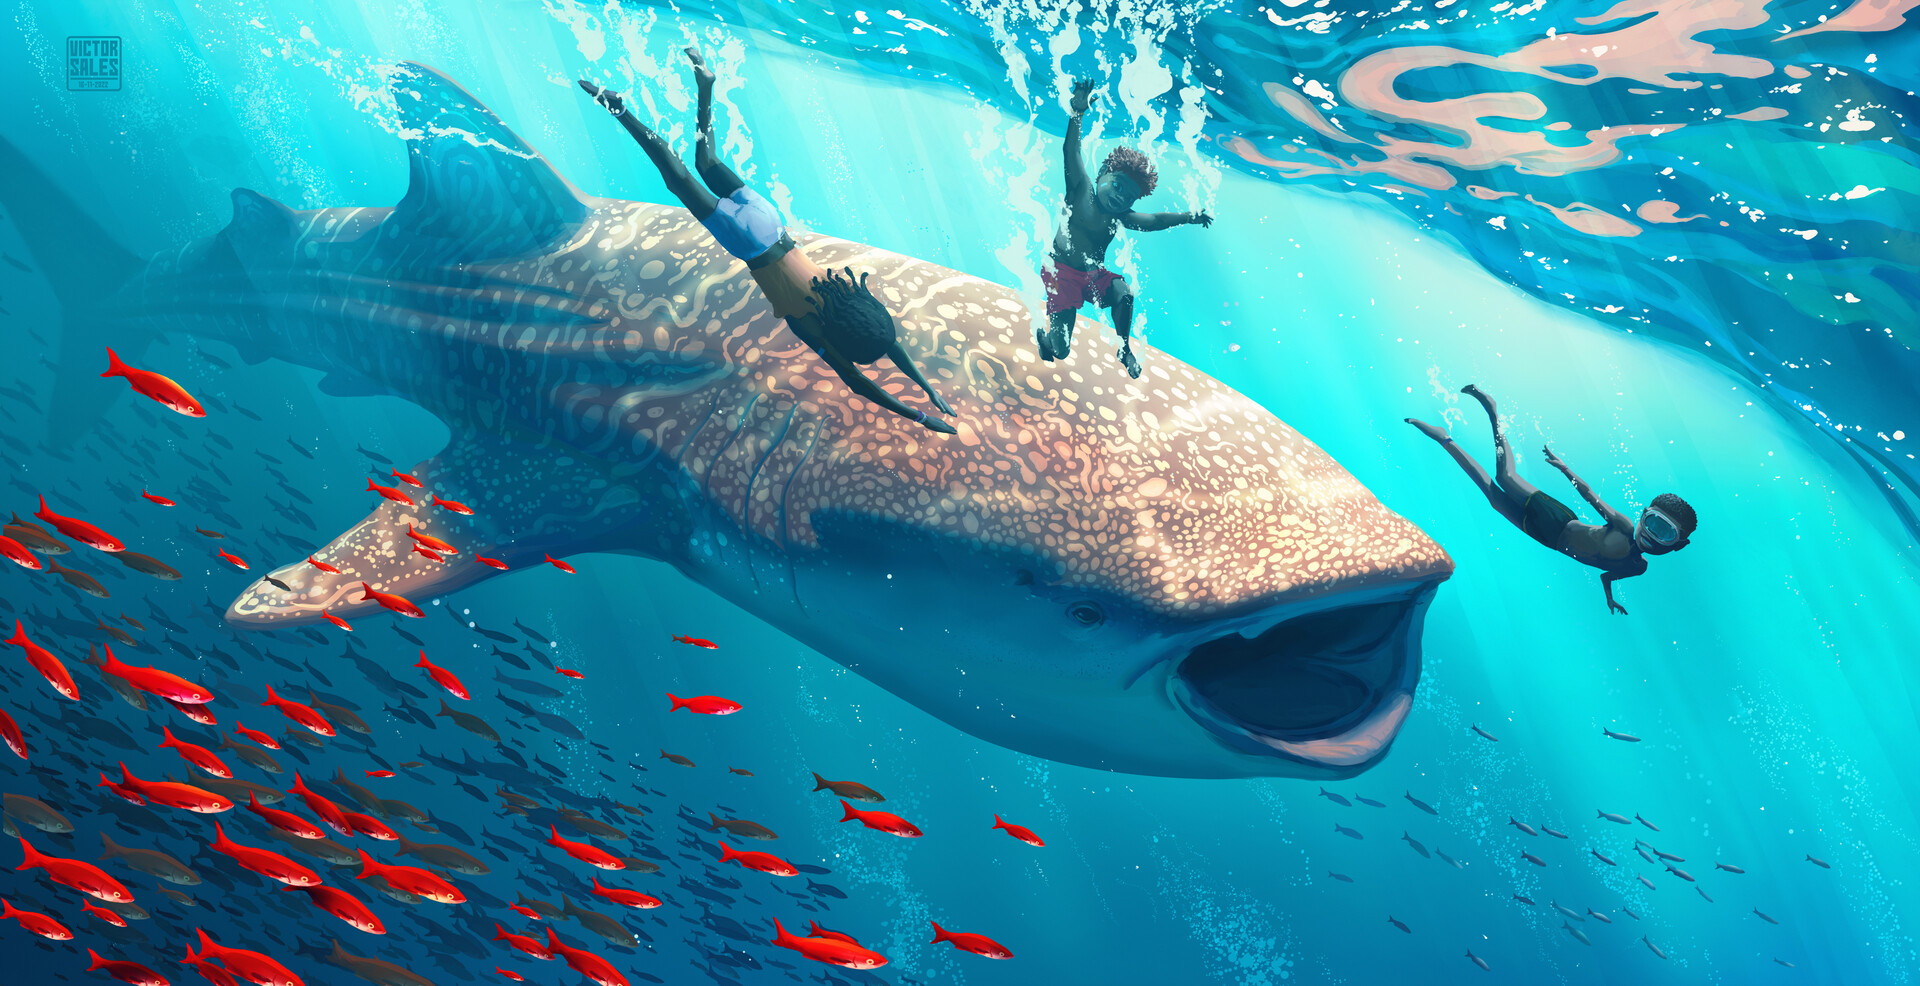 Victor Sales Digital Art Fantasy Art Water ArtStation Underwater Whale Whale Shark Fish Children Div 1920x986